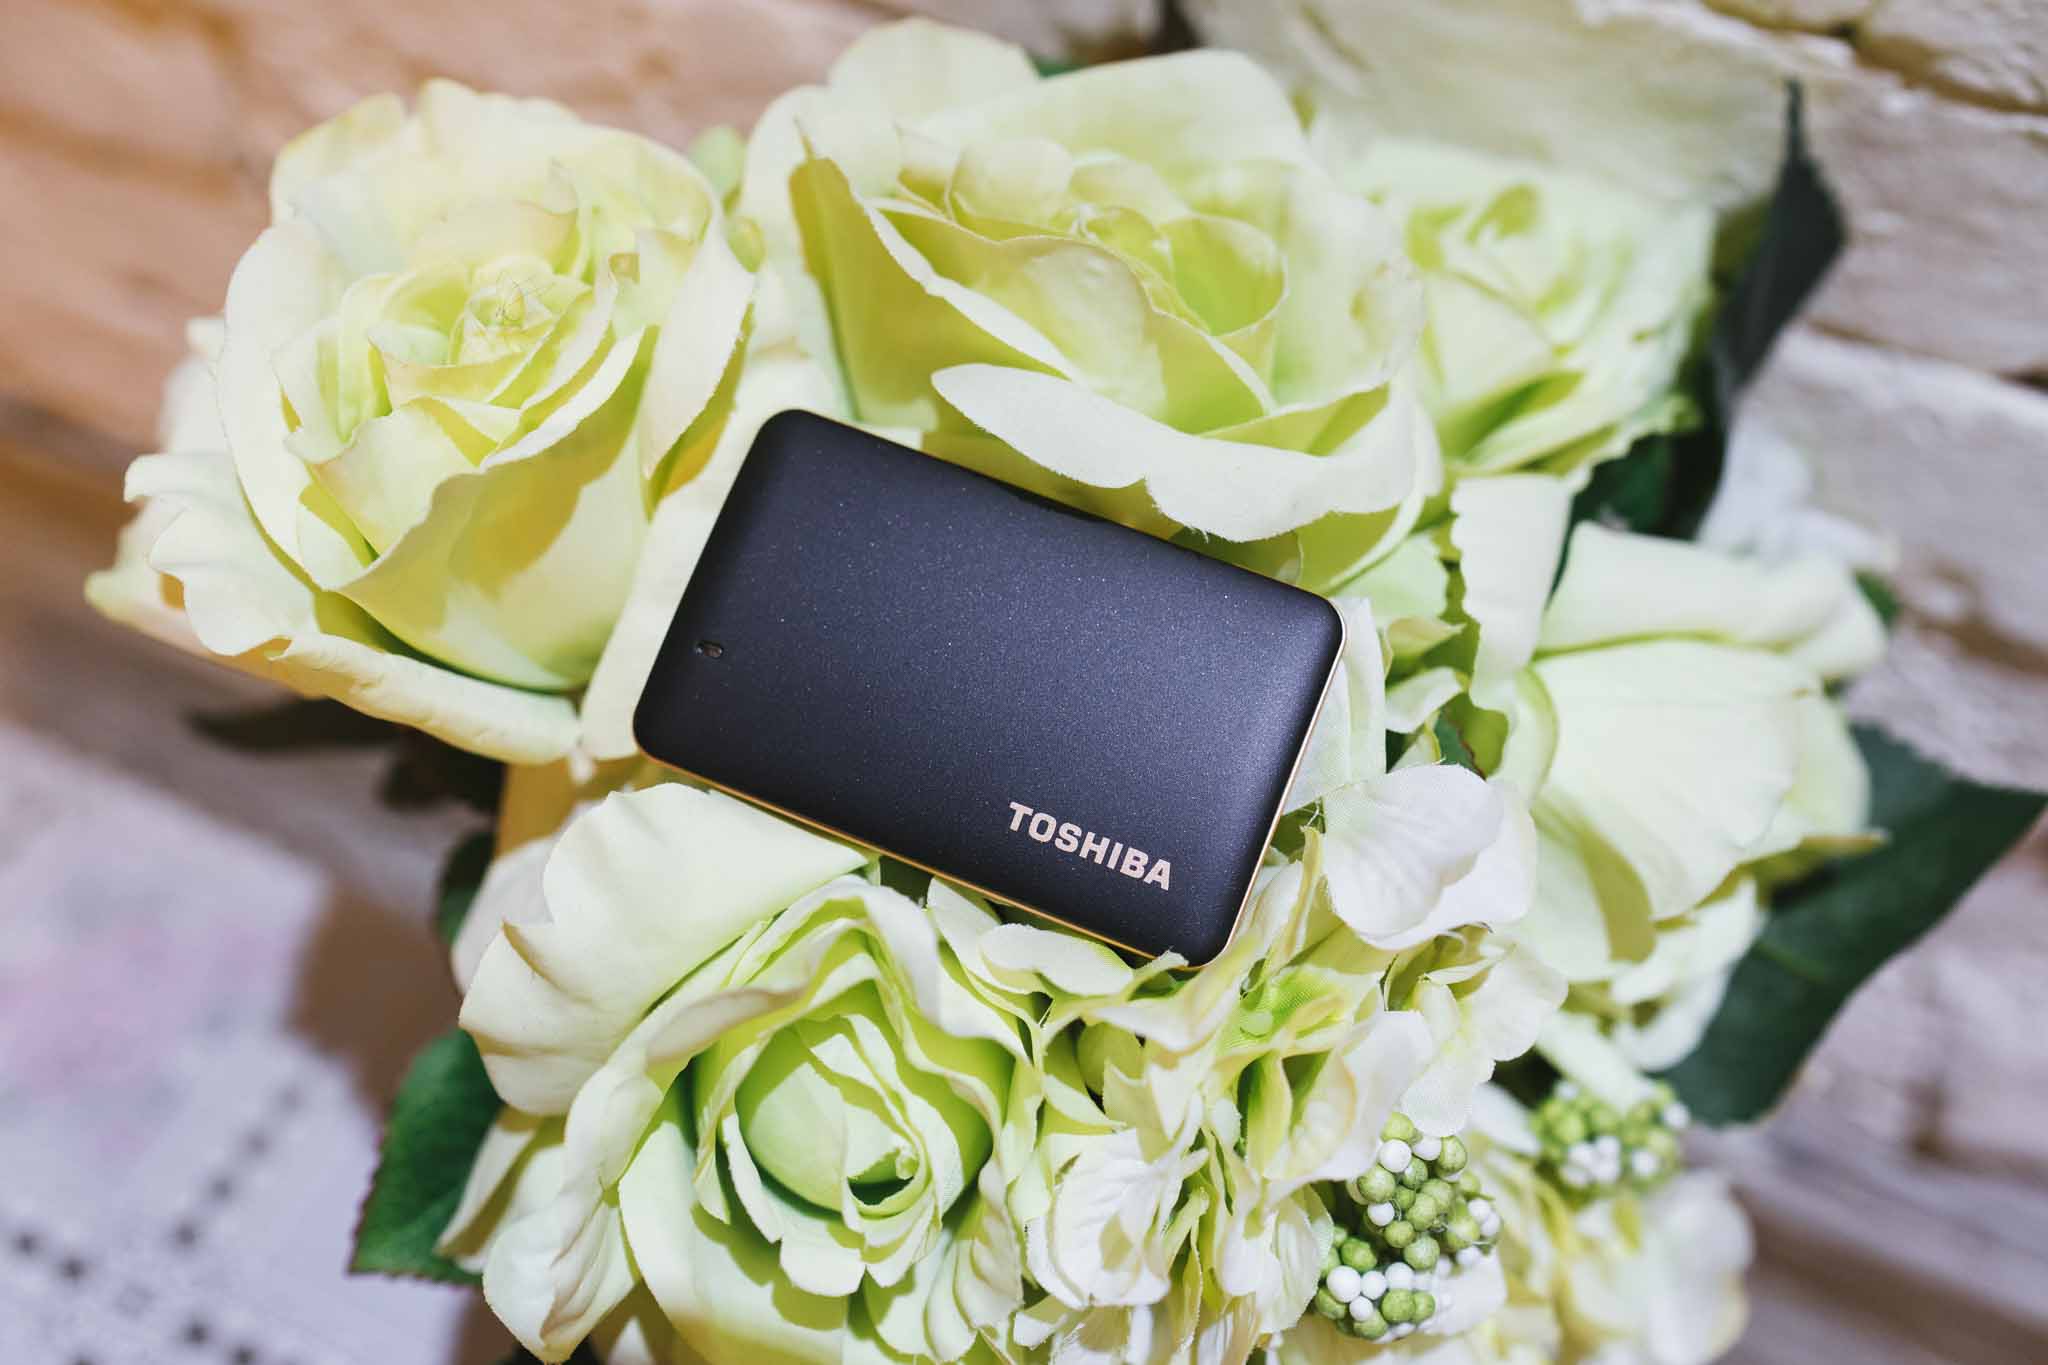 Đánh giá nhanh Toshiba X10: SSD di động tốc độ cao, siêu nhỏ gọn, 500 GB giá 5,4 triệu